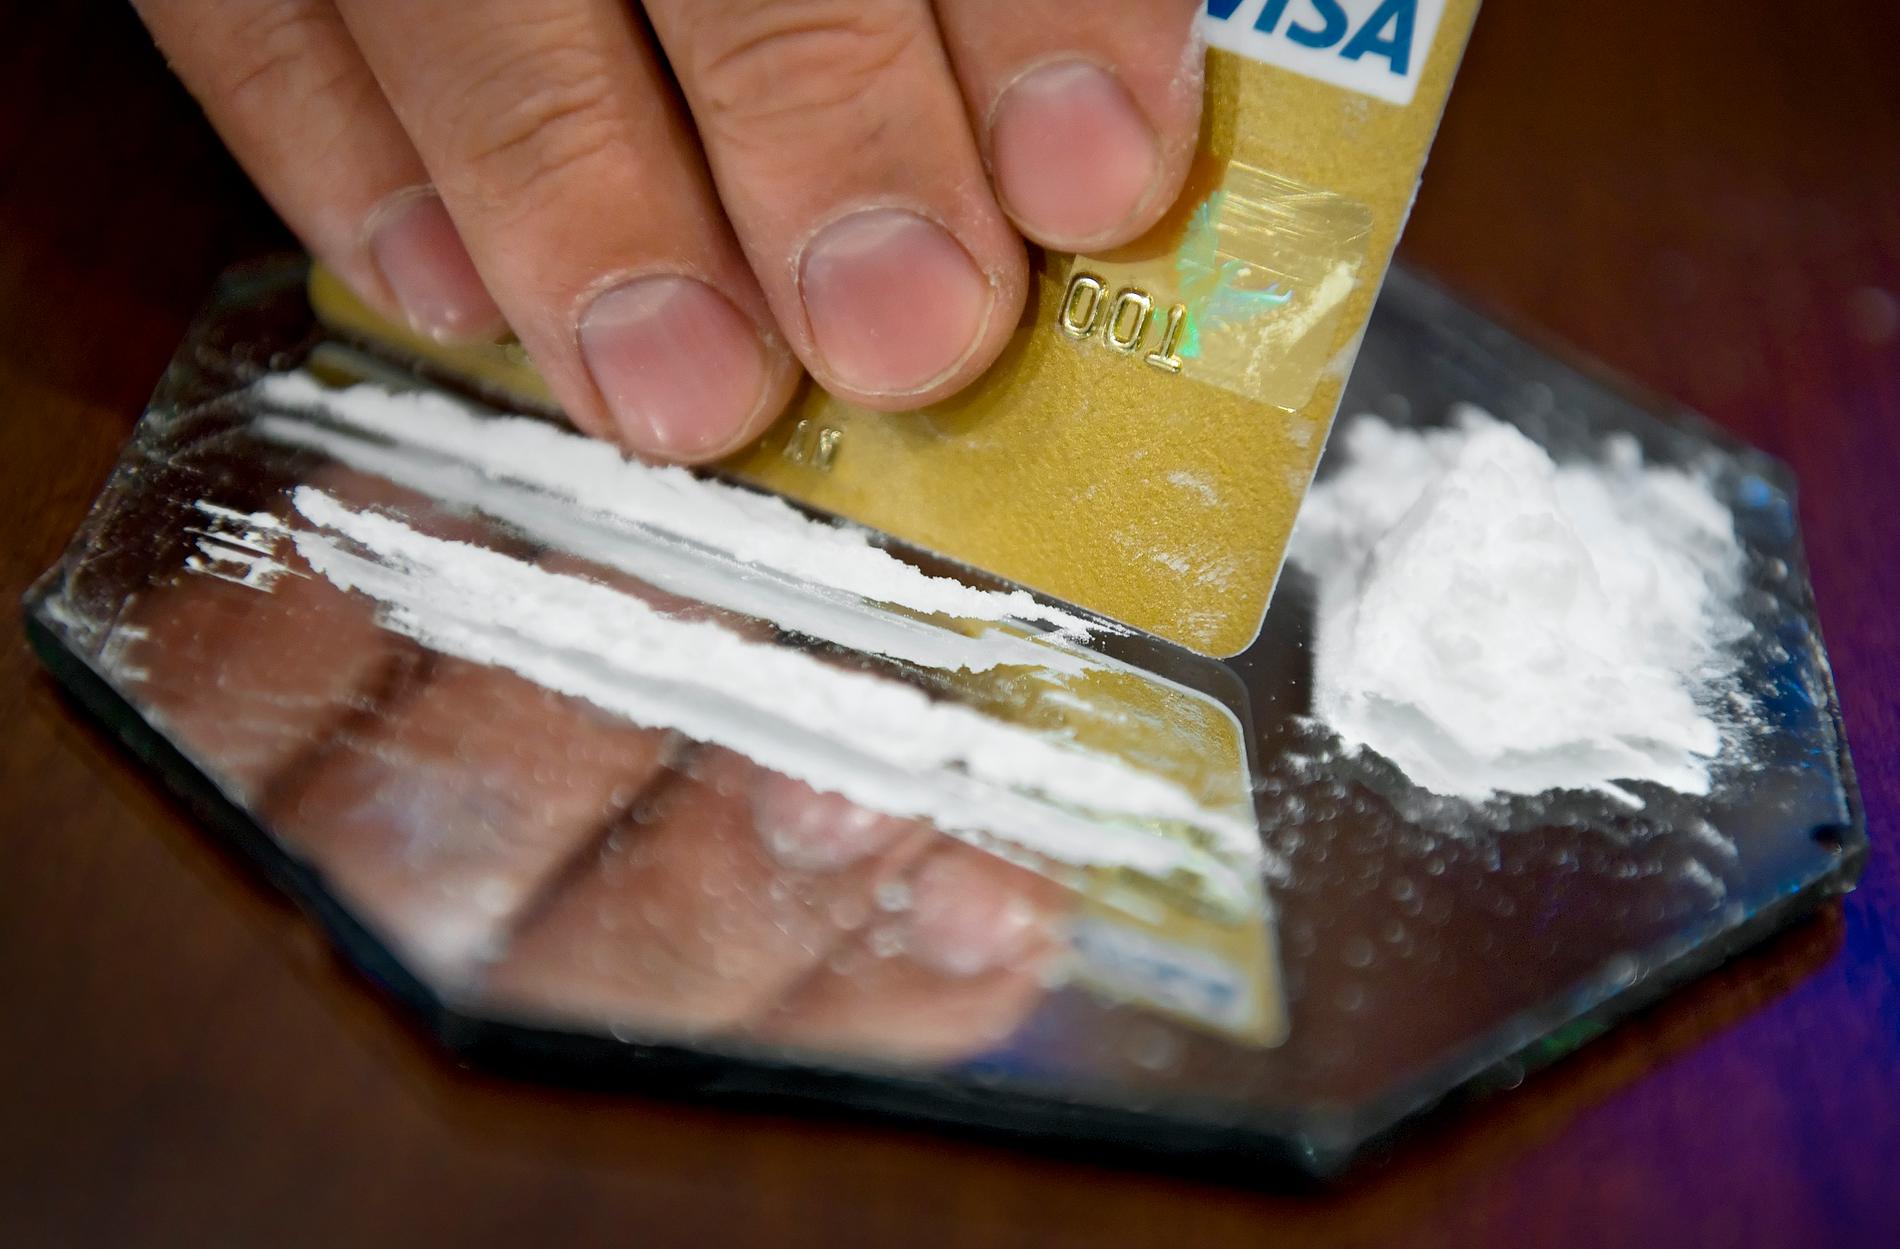 17 personer är misstänkta i det rekordstora kokainsmugglarfallet i Finland, skriver Yle. Arkivbild.